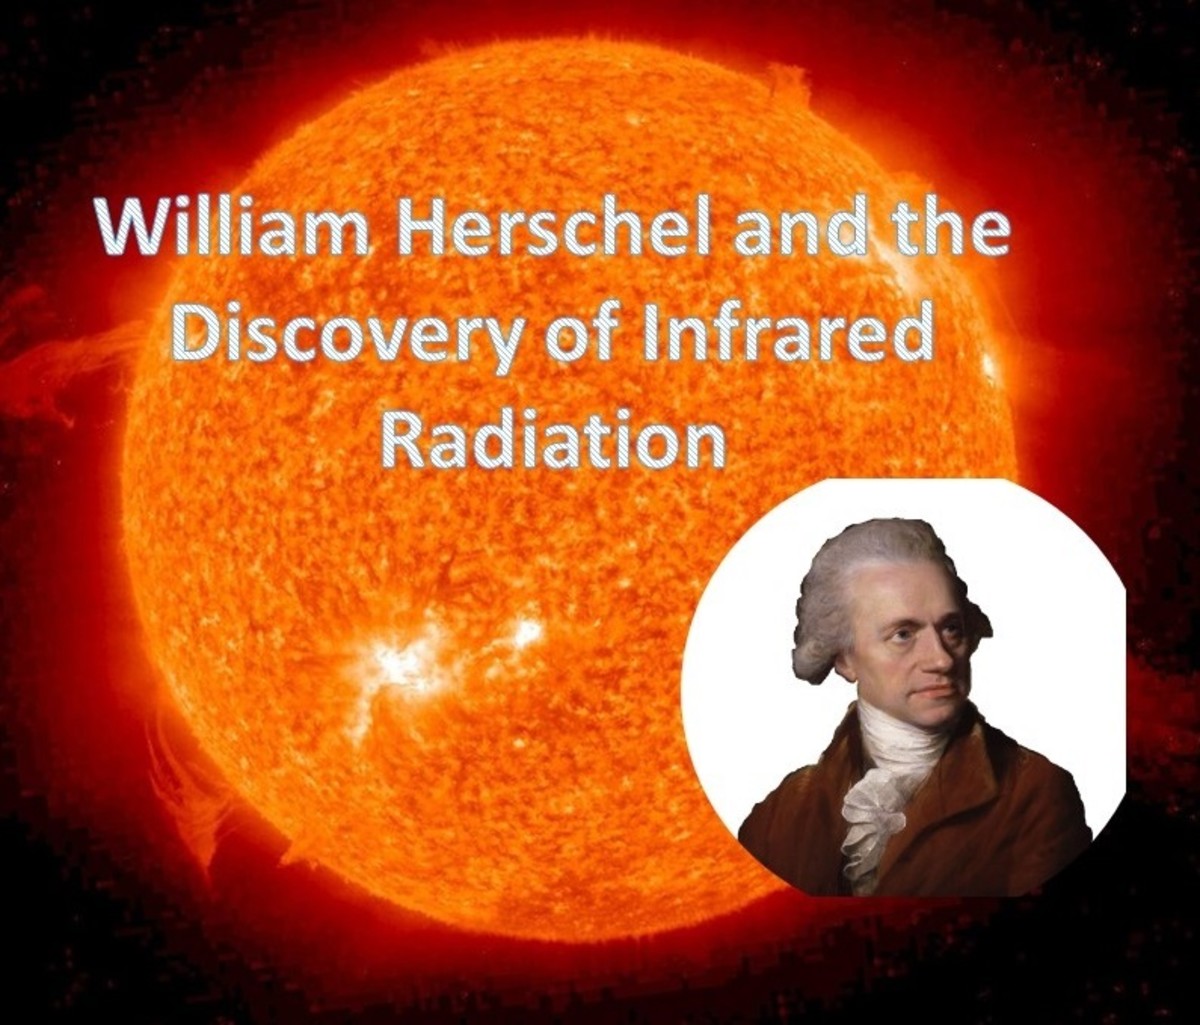 william herschel uranus discovery